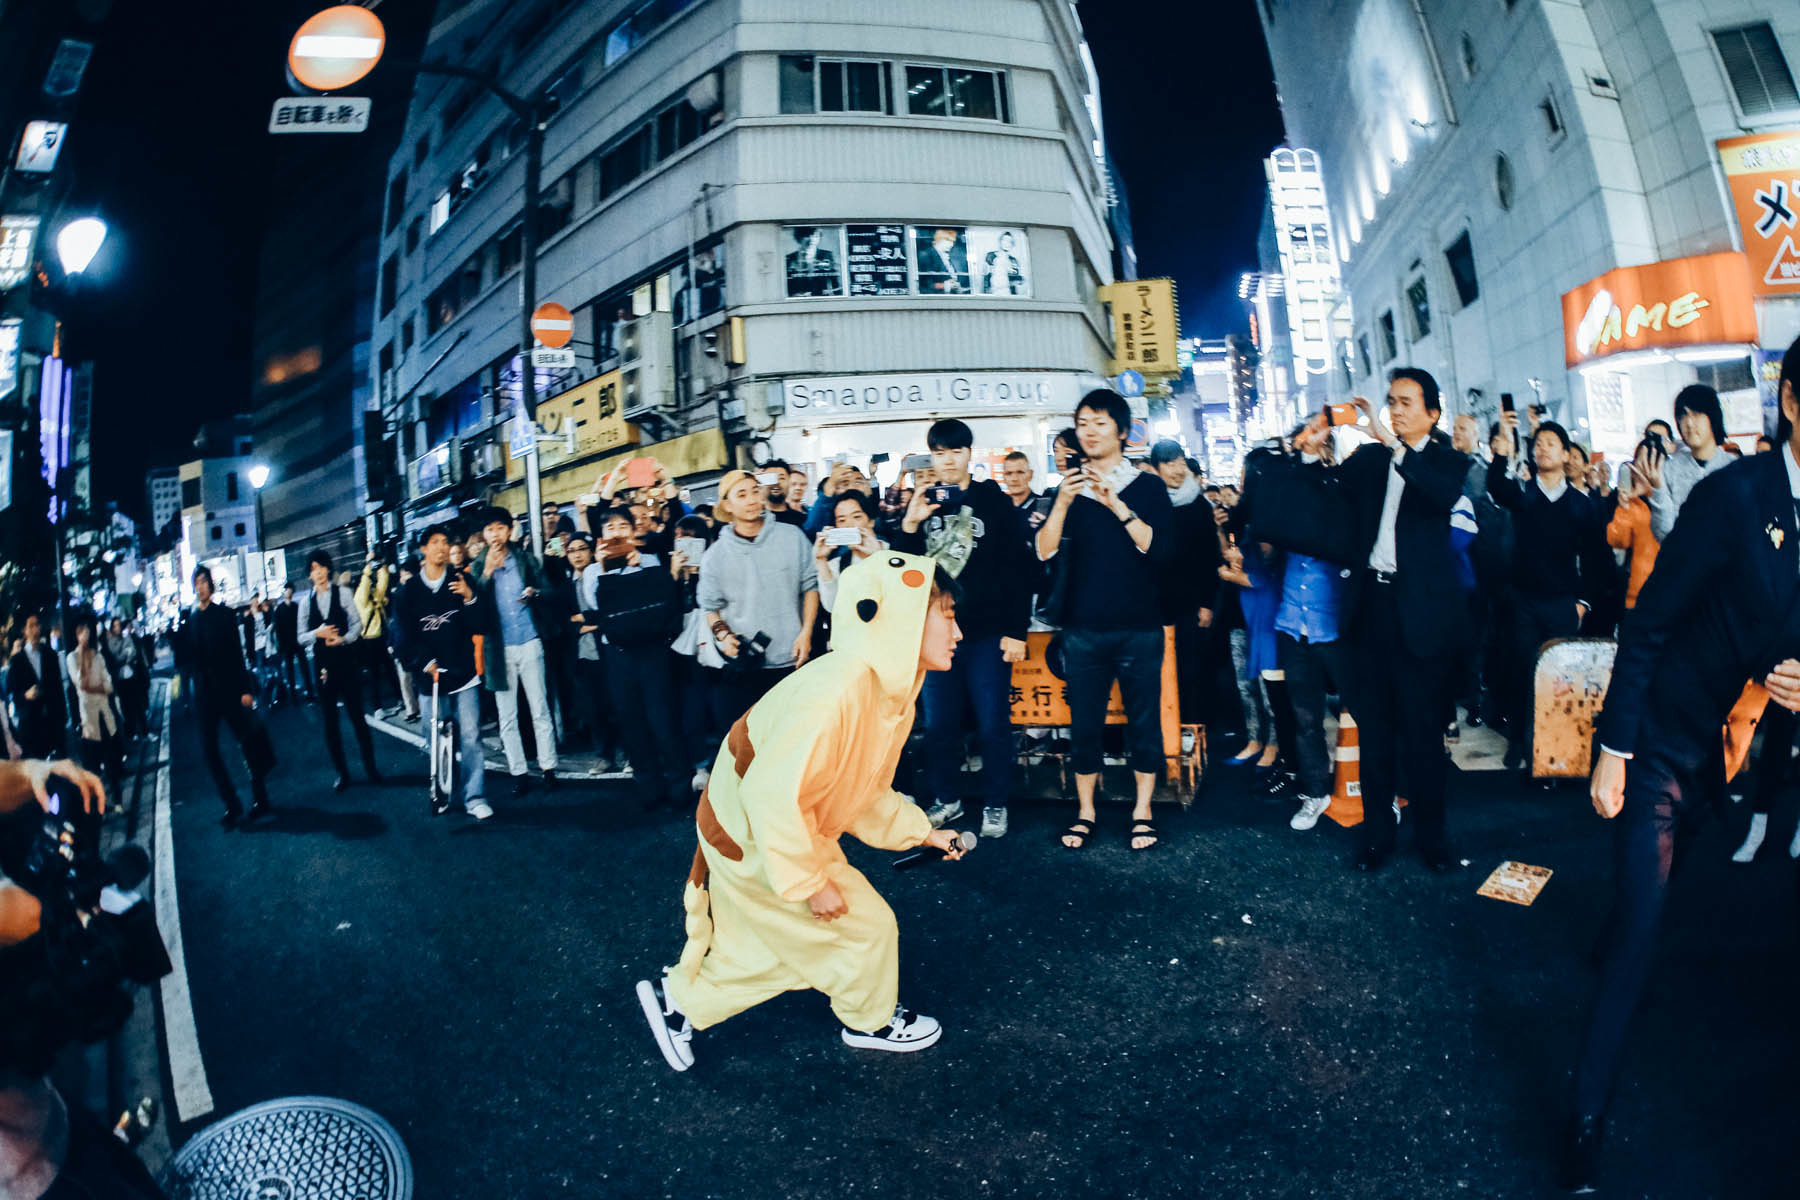 水曜日のカンパネラ Chim Pomの展示会に飛び入り参加 ピカチュウコムアイ 姿で歌舞伎町を練り歩く Spice エンタメ特化型情報メディア スパイス